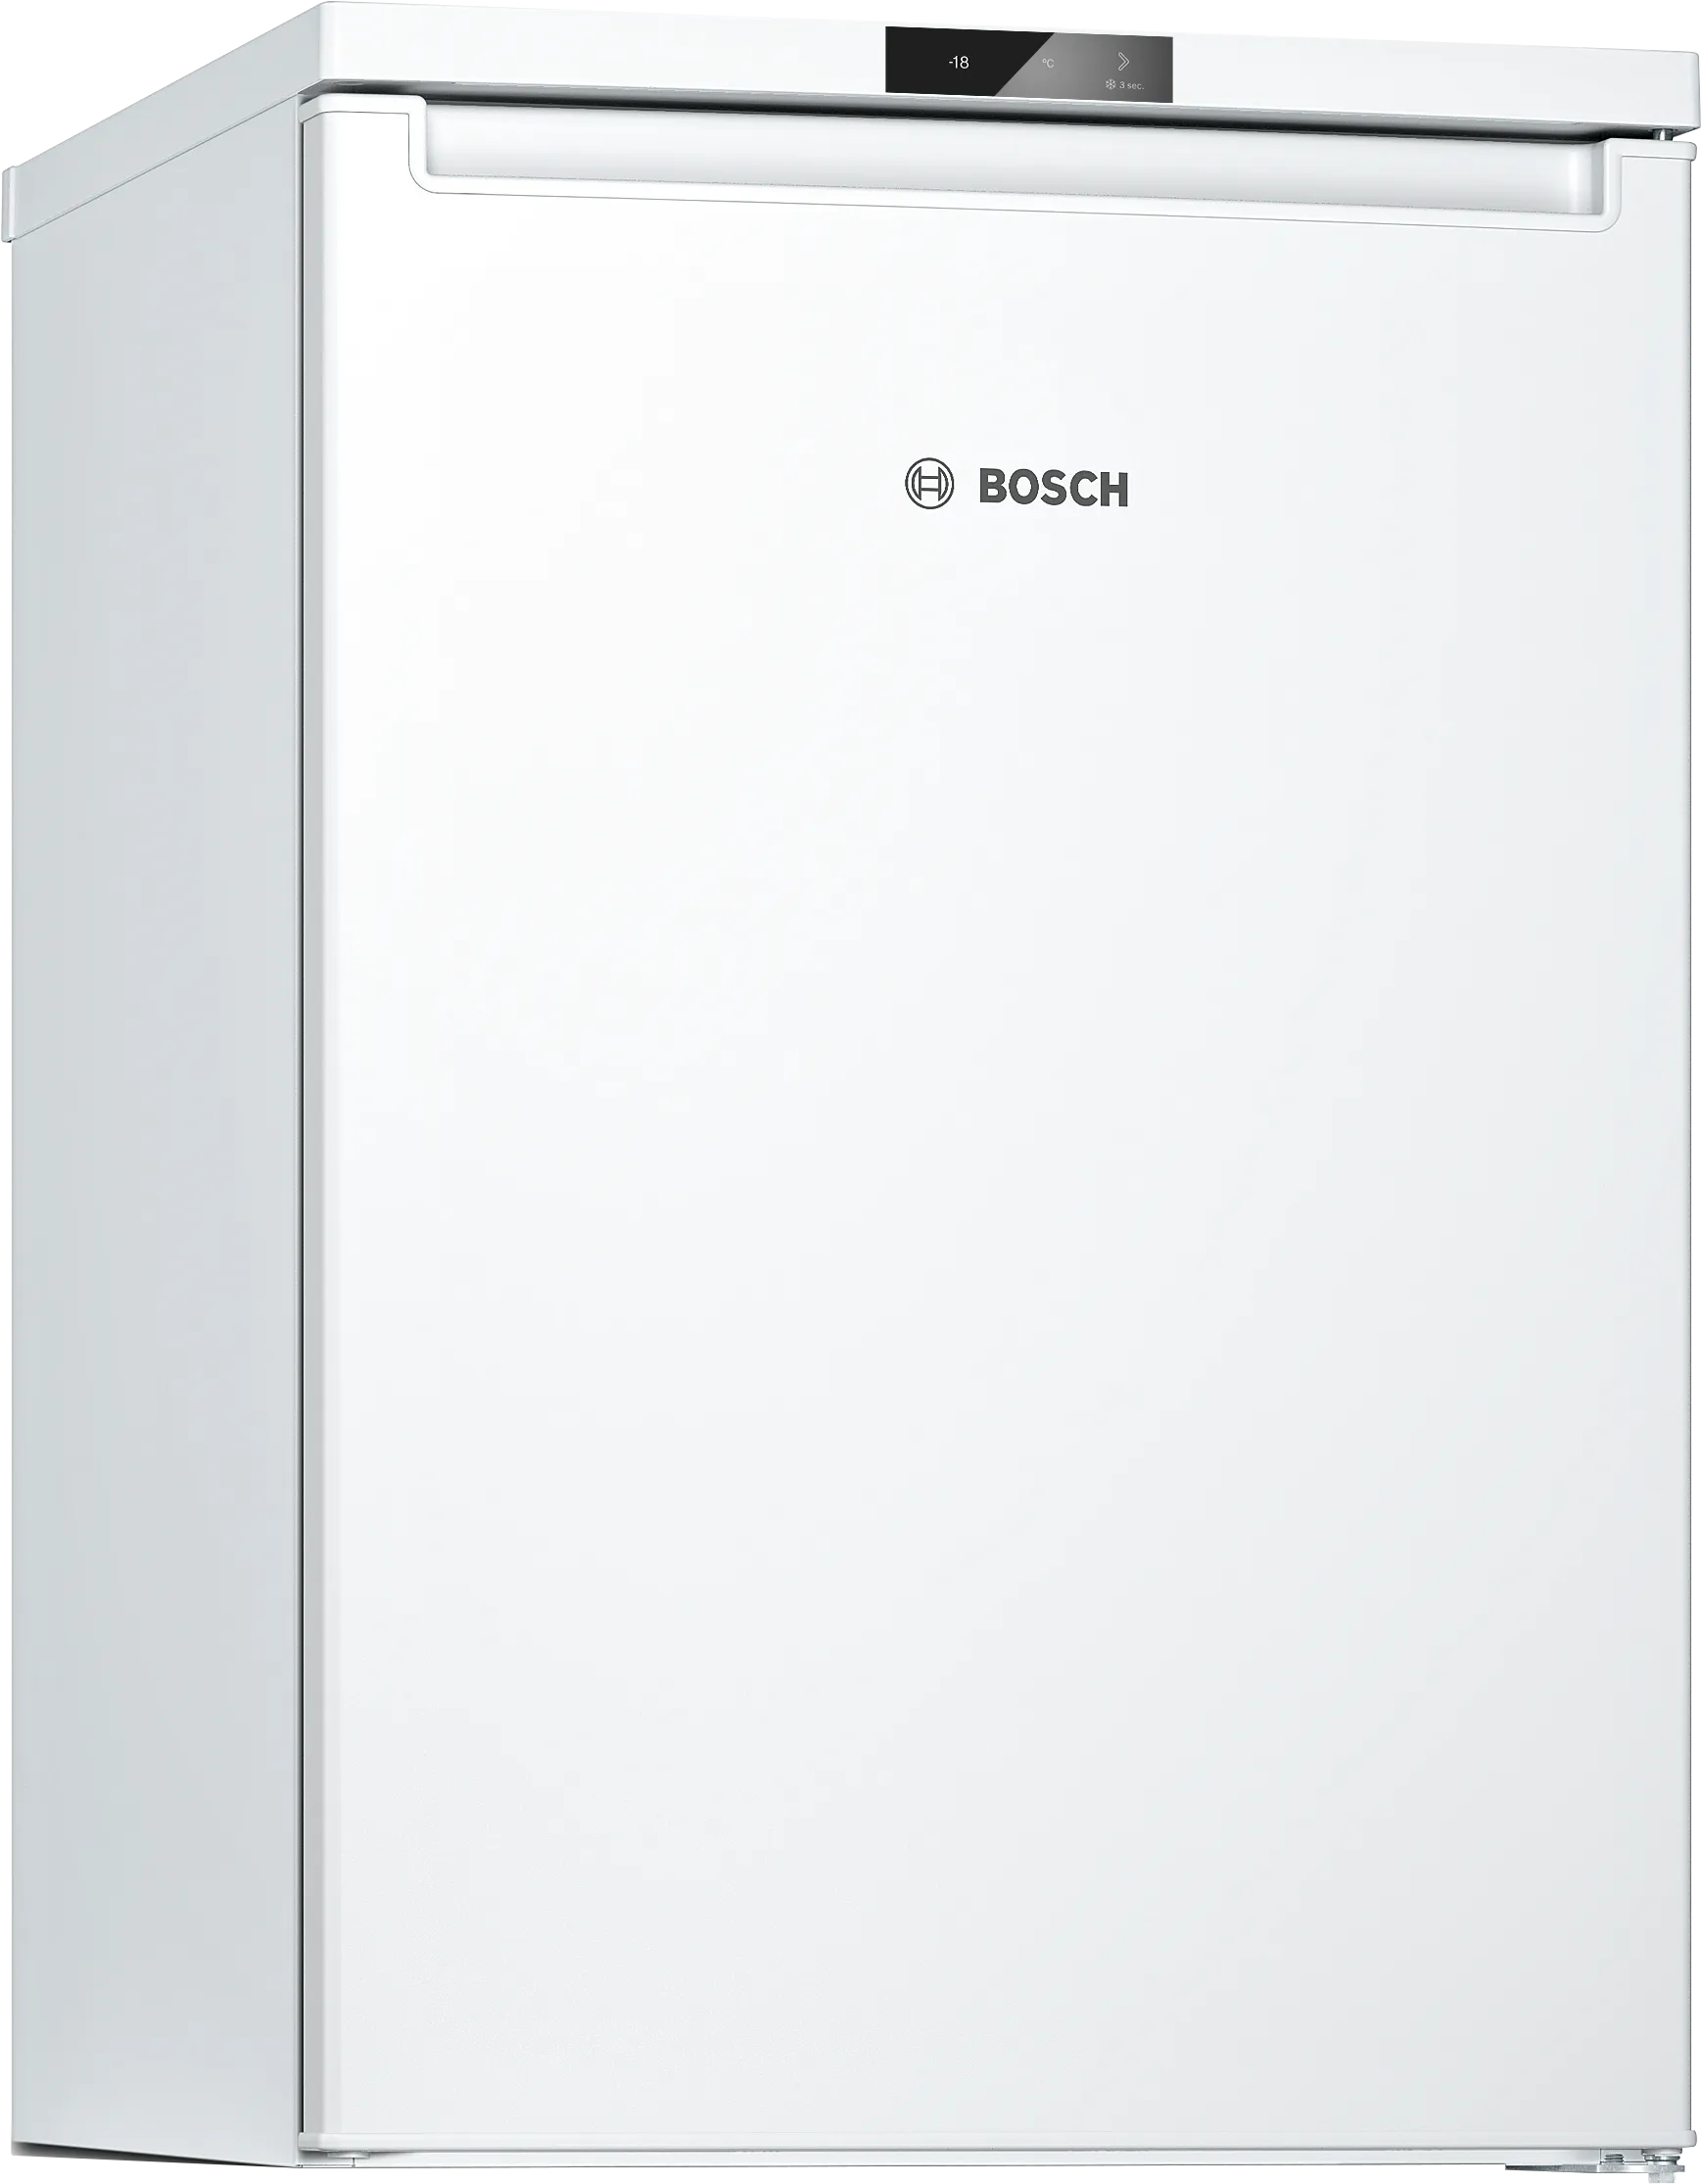 Series 2 Under Counter Freezer 85 x 56 cm White 